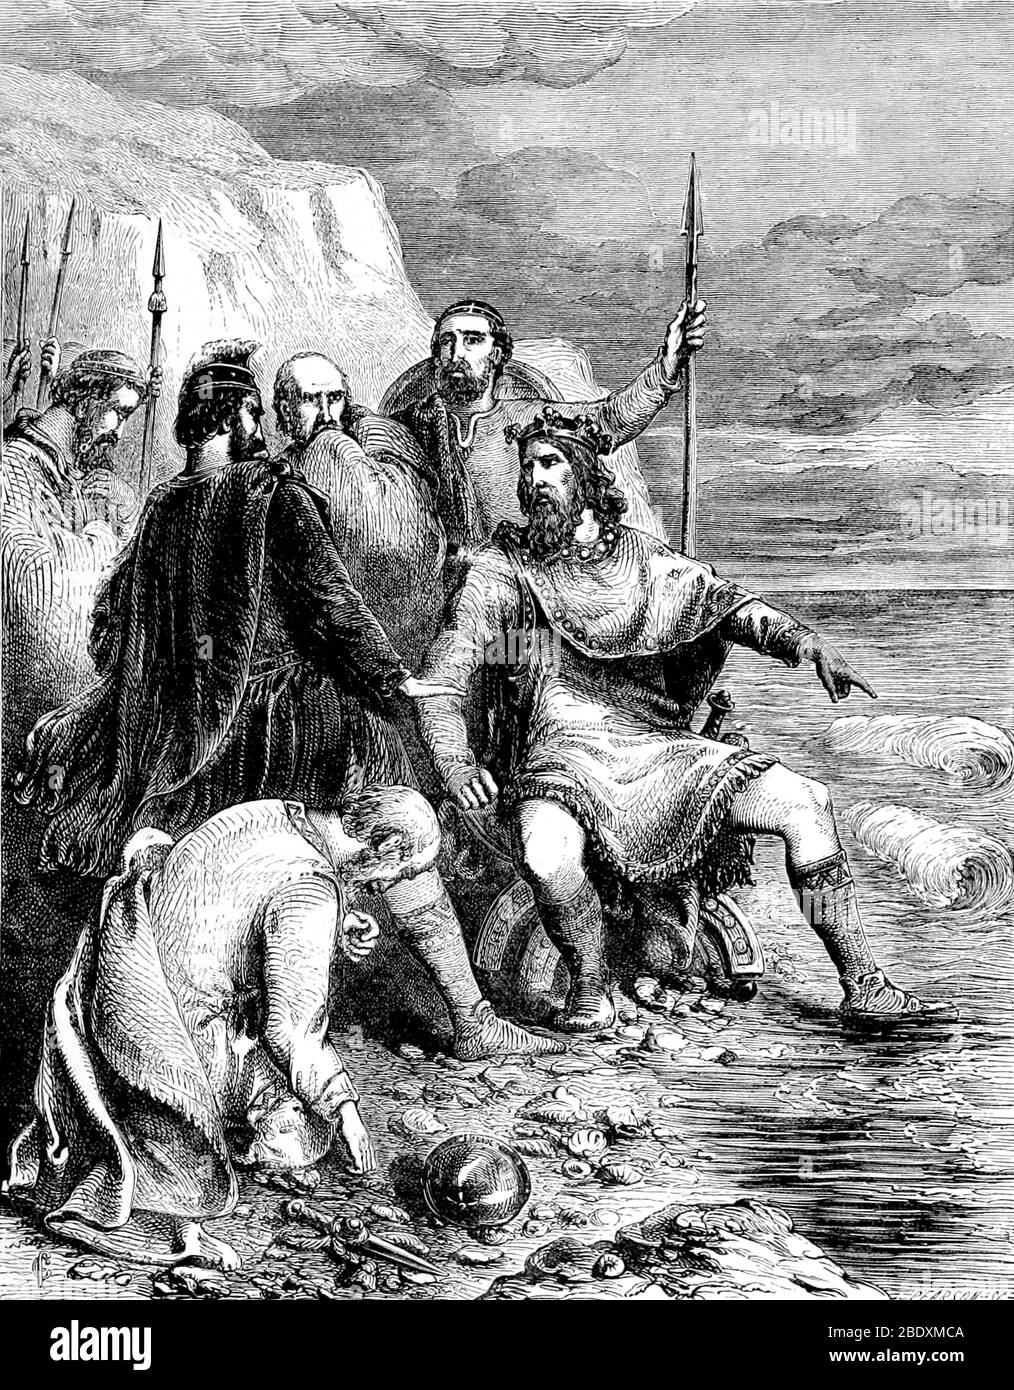 O LIVRO DE AREIA: O império Viking de Knud II (Cnut the Great)